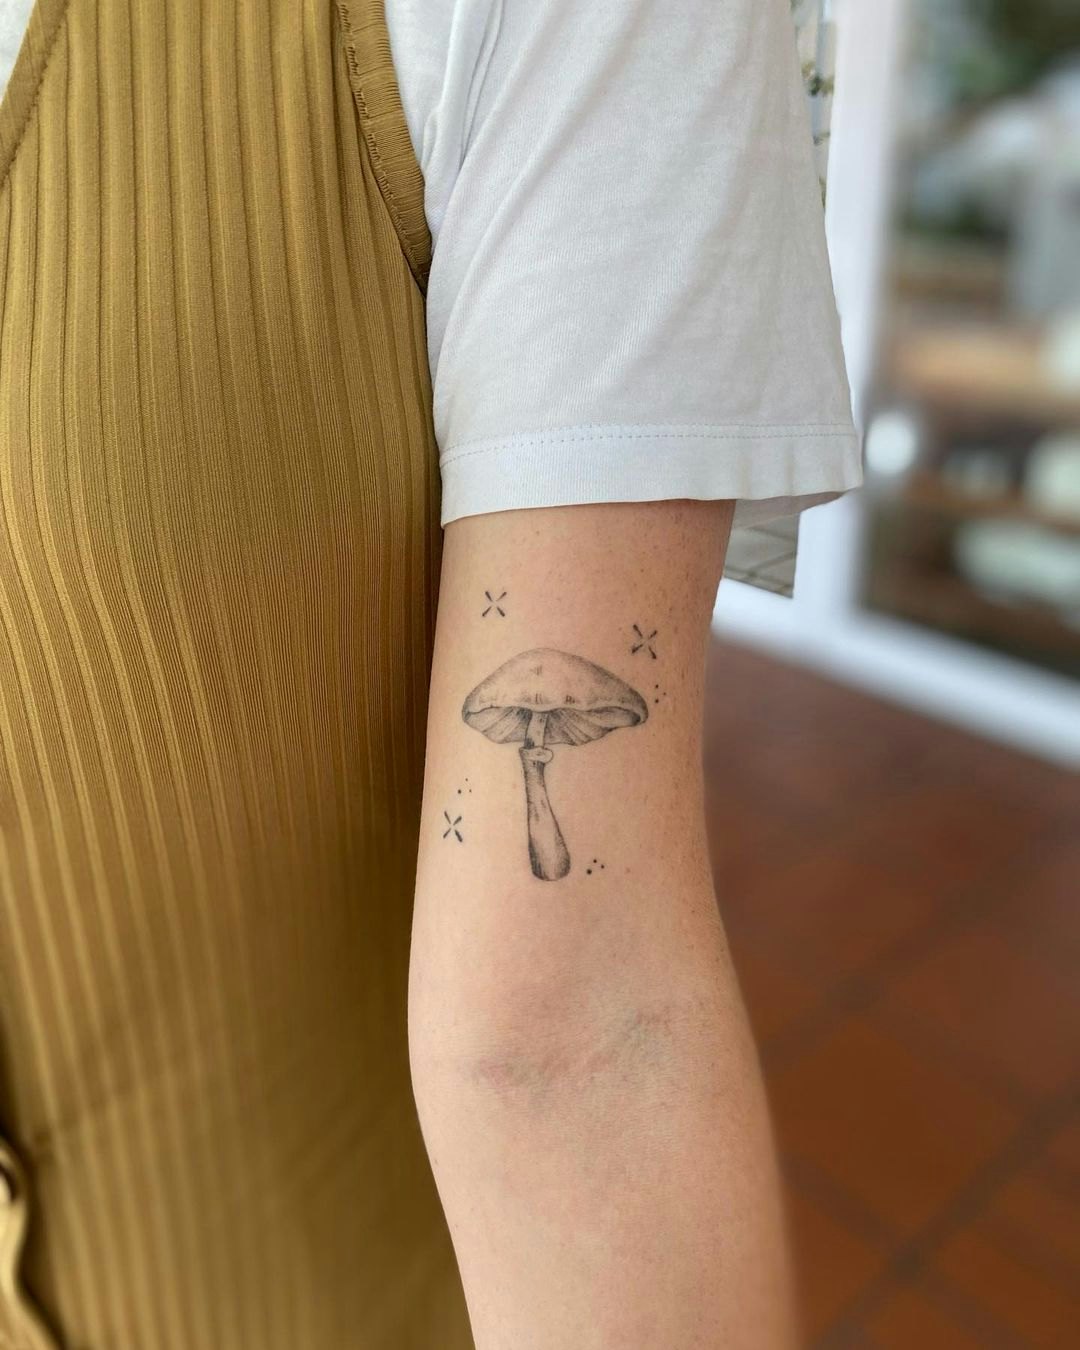 Teeny tiny snail tattoo done last  High Priestess Tattoo  Facebook